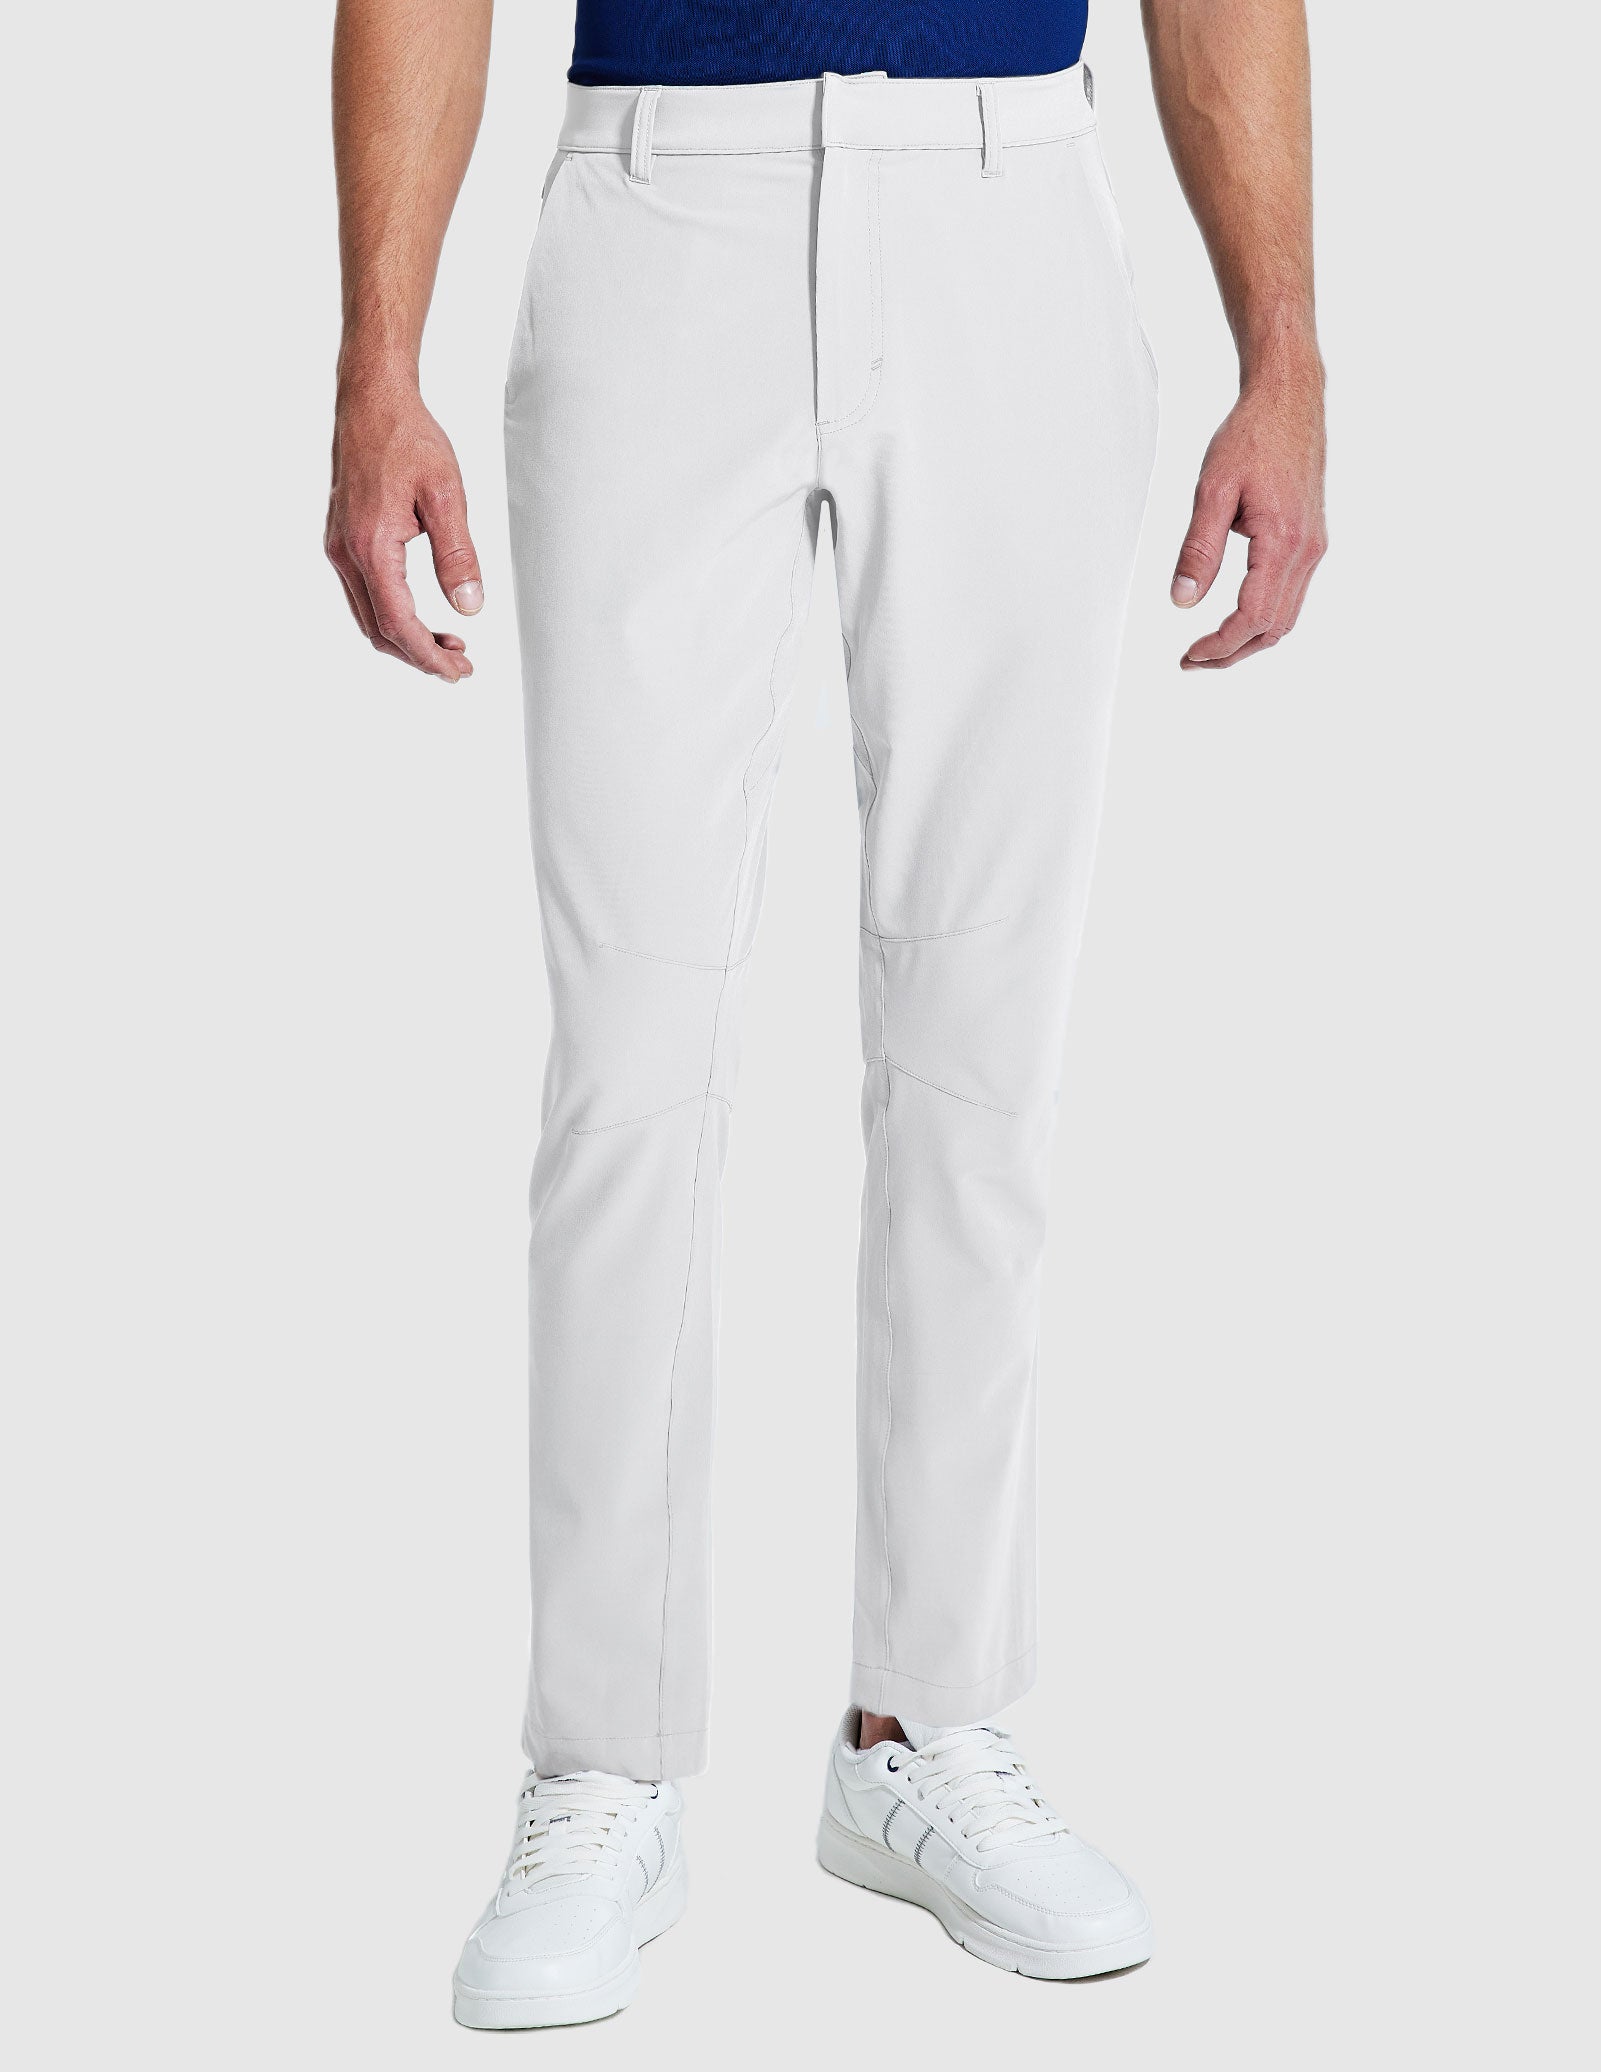 Men's Stretch Golf Pants Slim Fit Quick Dry Pants